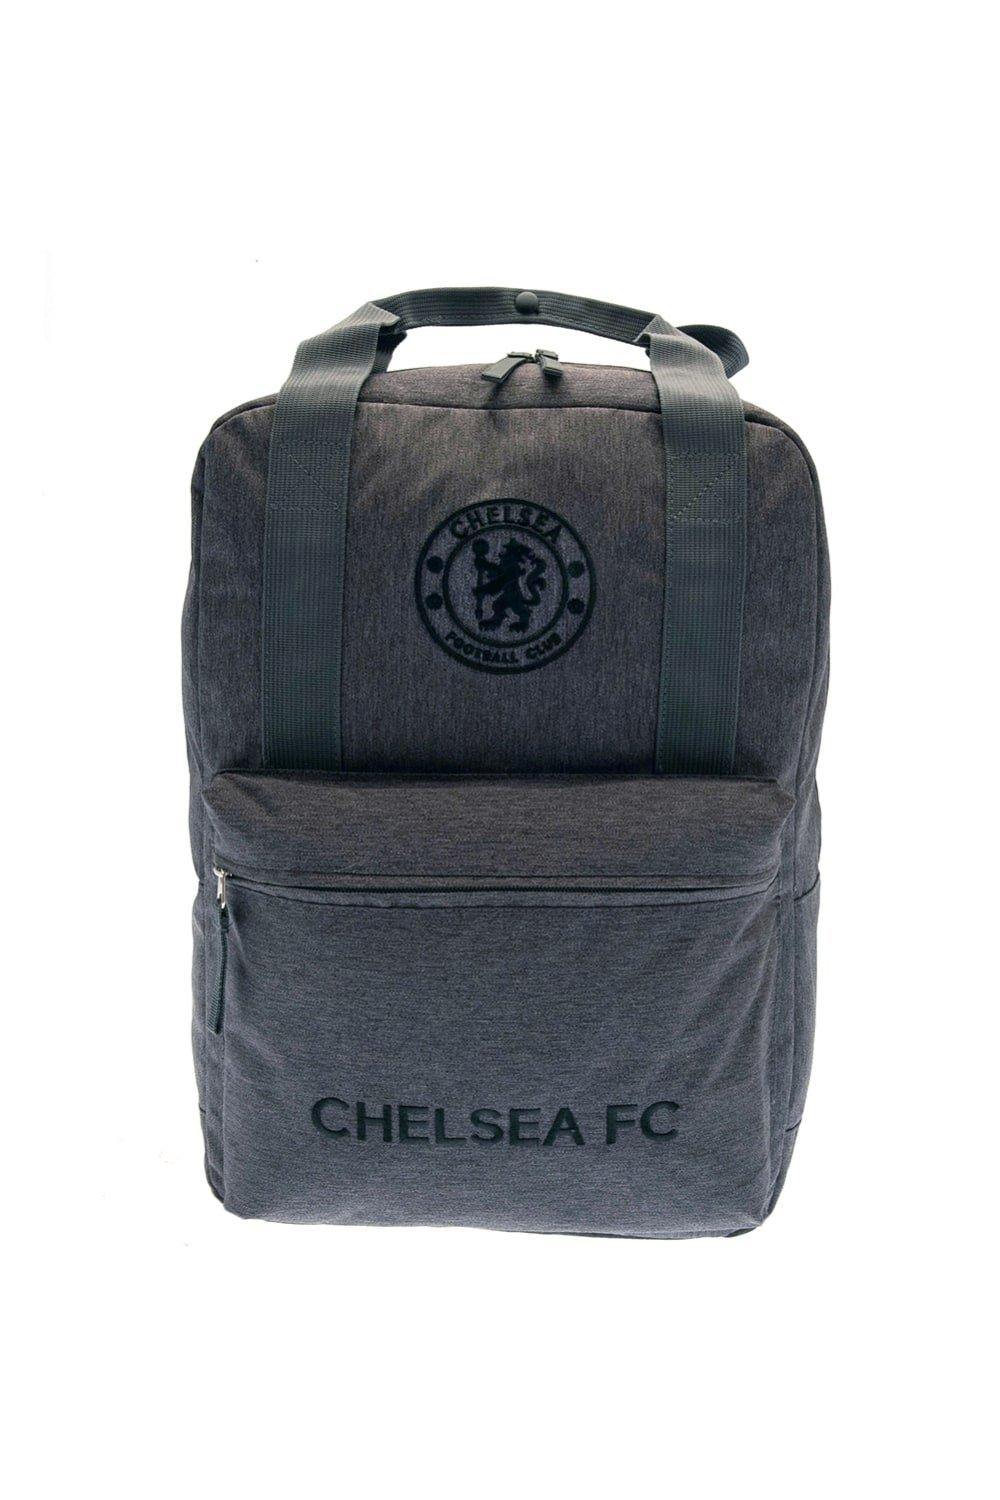 Рюкзак с гербом Chelsea FC, черный чехол mypads герб иваноской области для umidigi g1 задняя панель накладка бампер